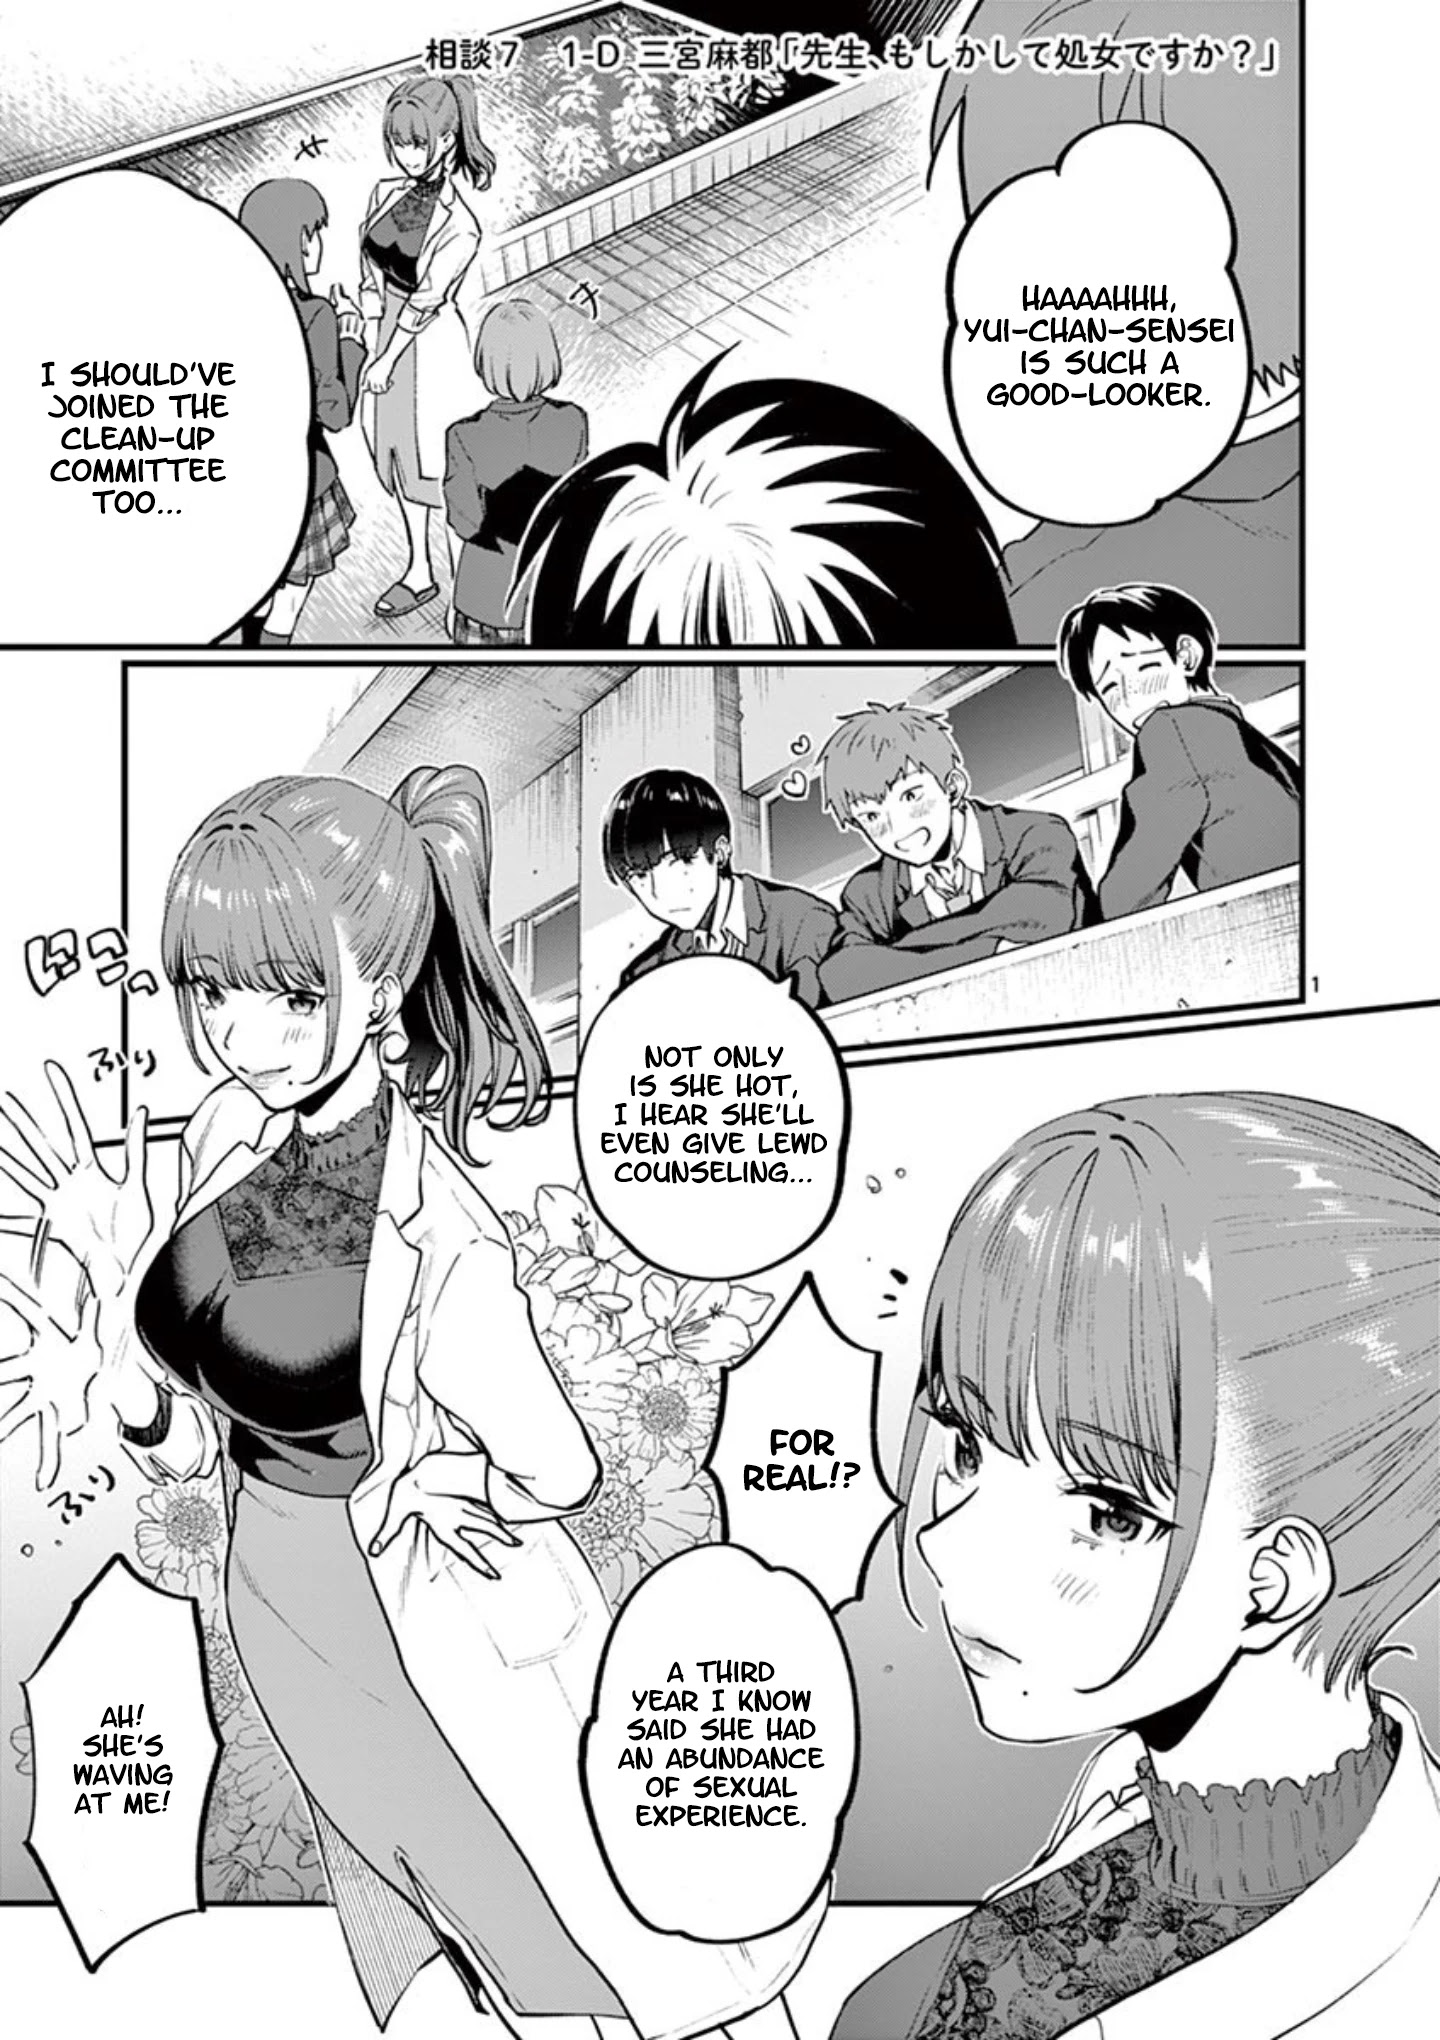 Sensei De ○○ Shicha Ikemasen! - Page 1